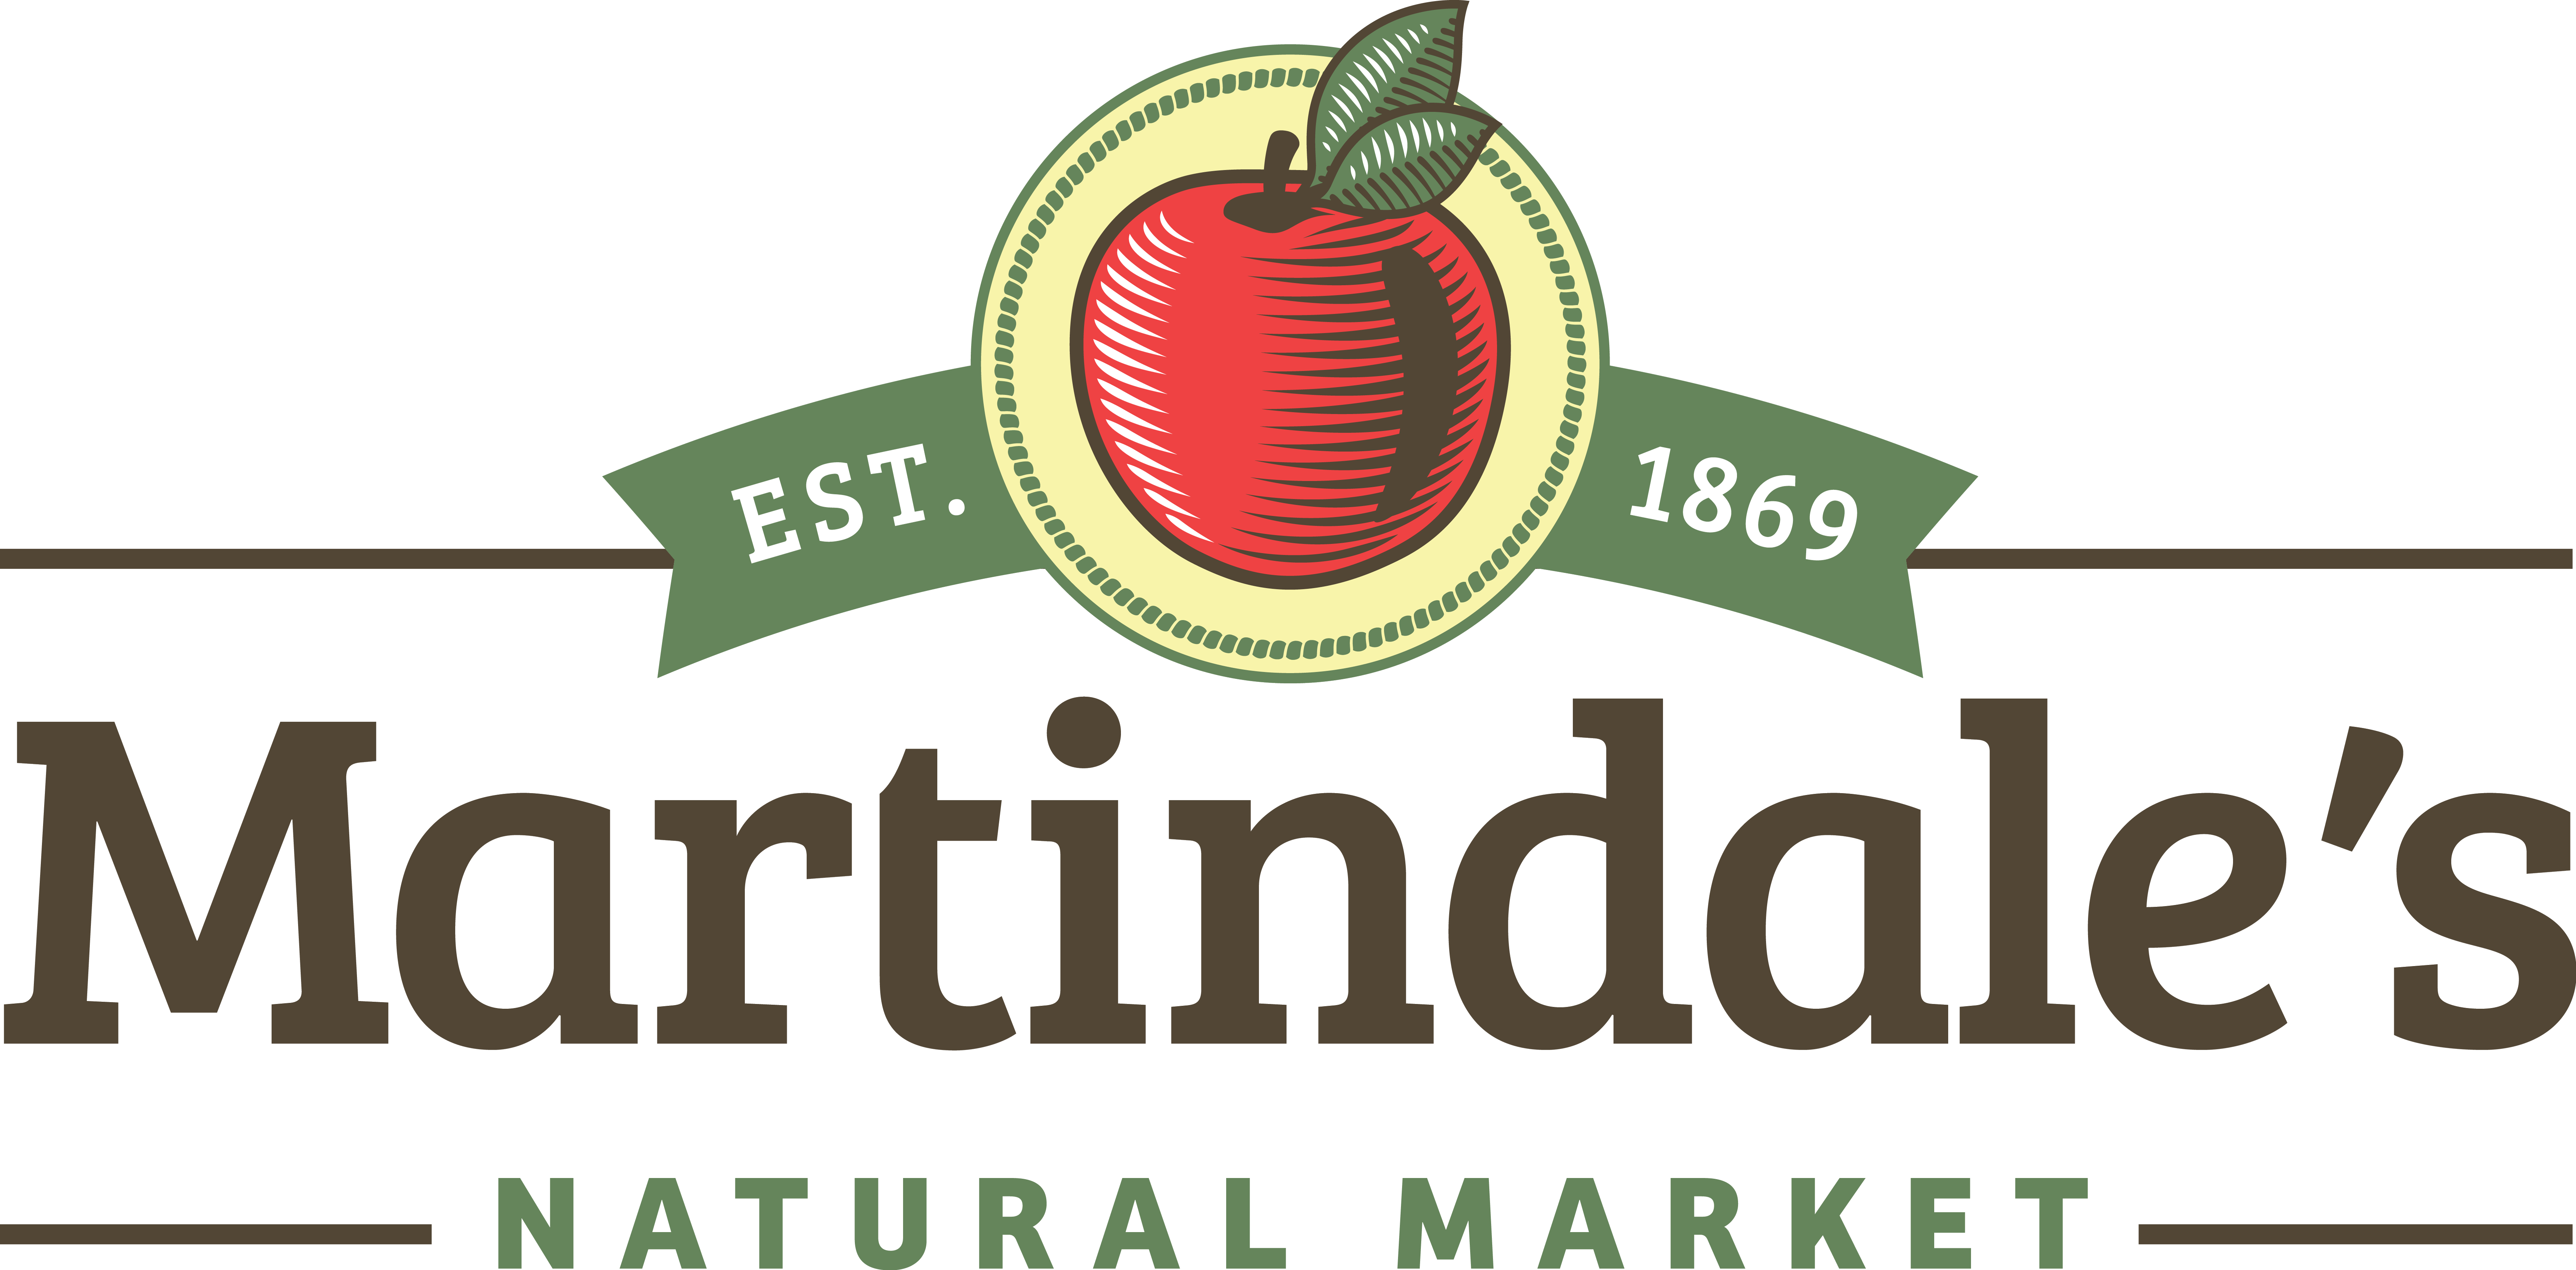 Martindale's Natural Market